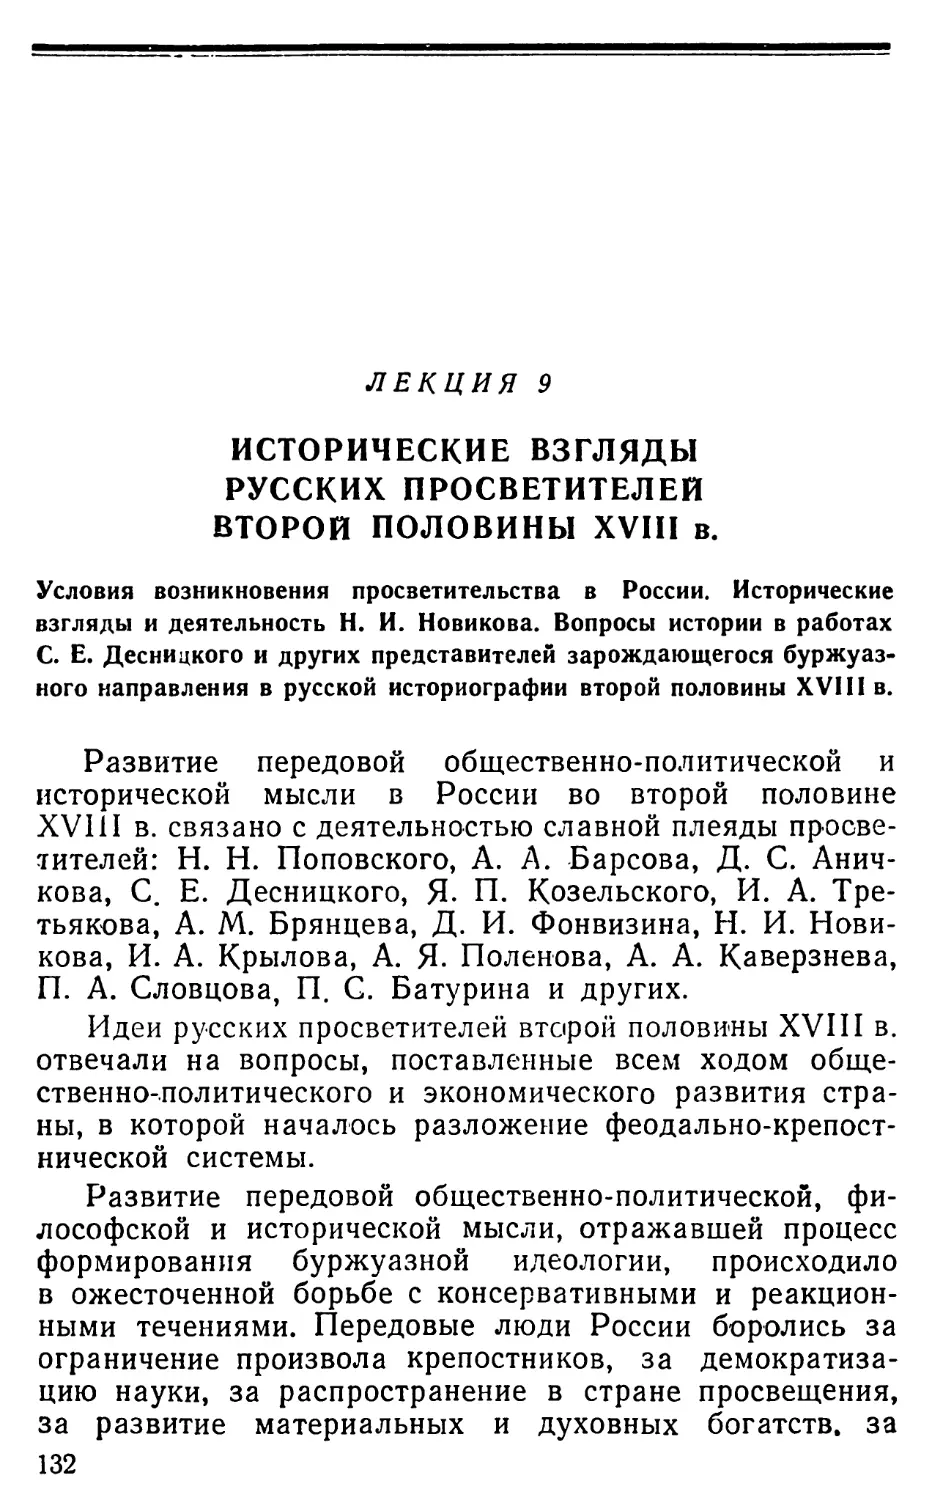 Лекция 9. Исторические взгляды русских просветителей второй половины XVIII в